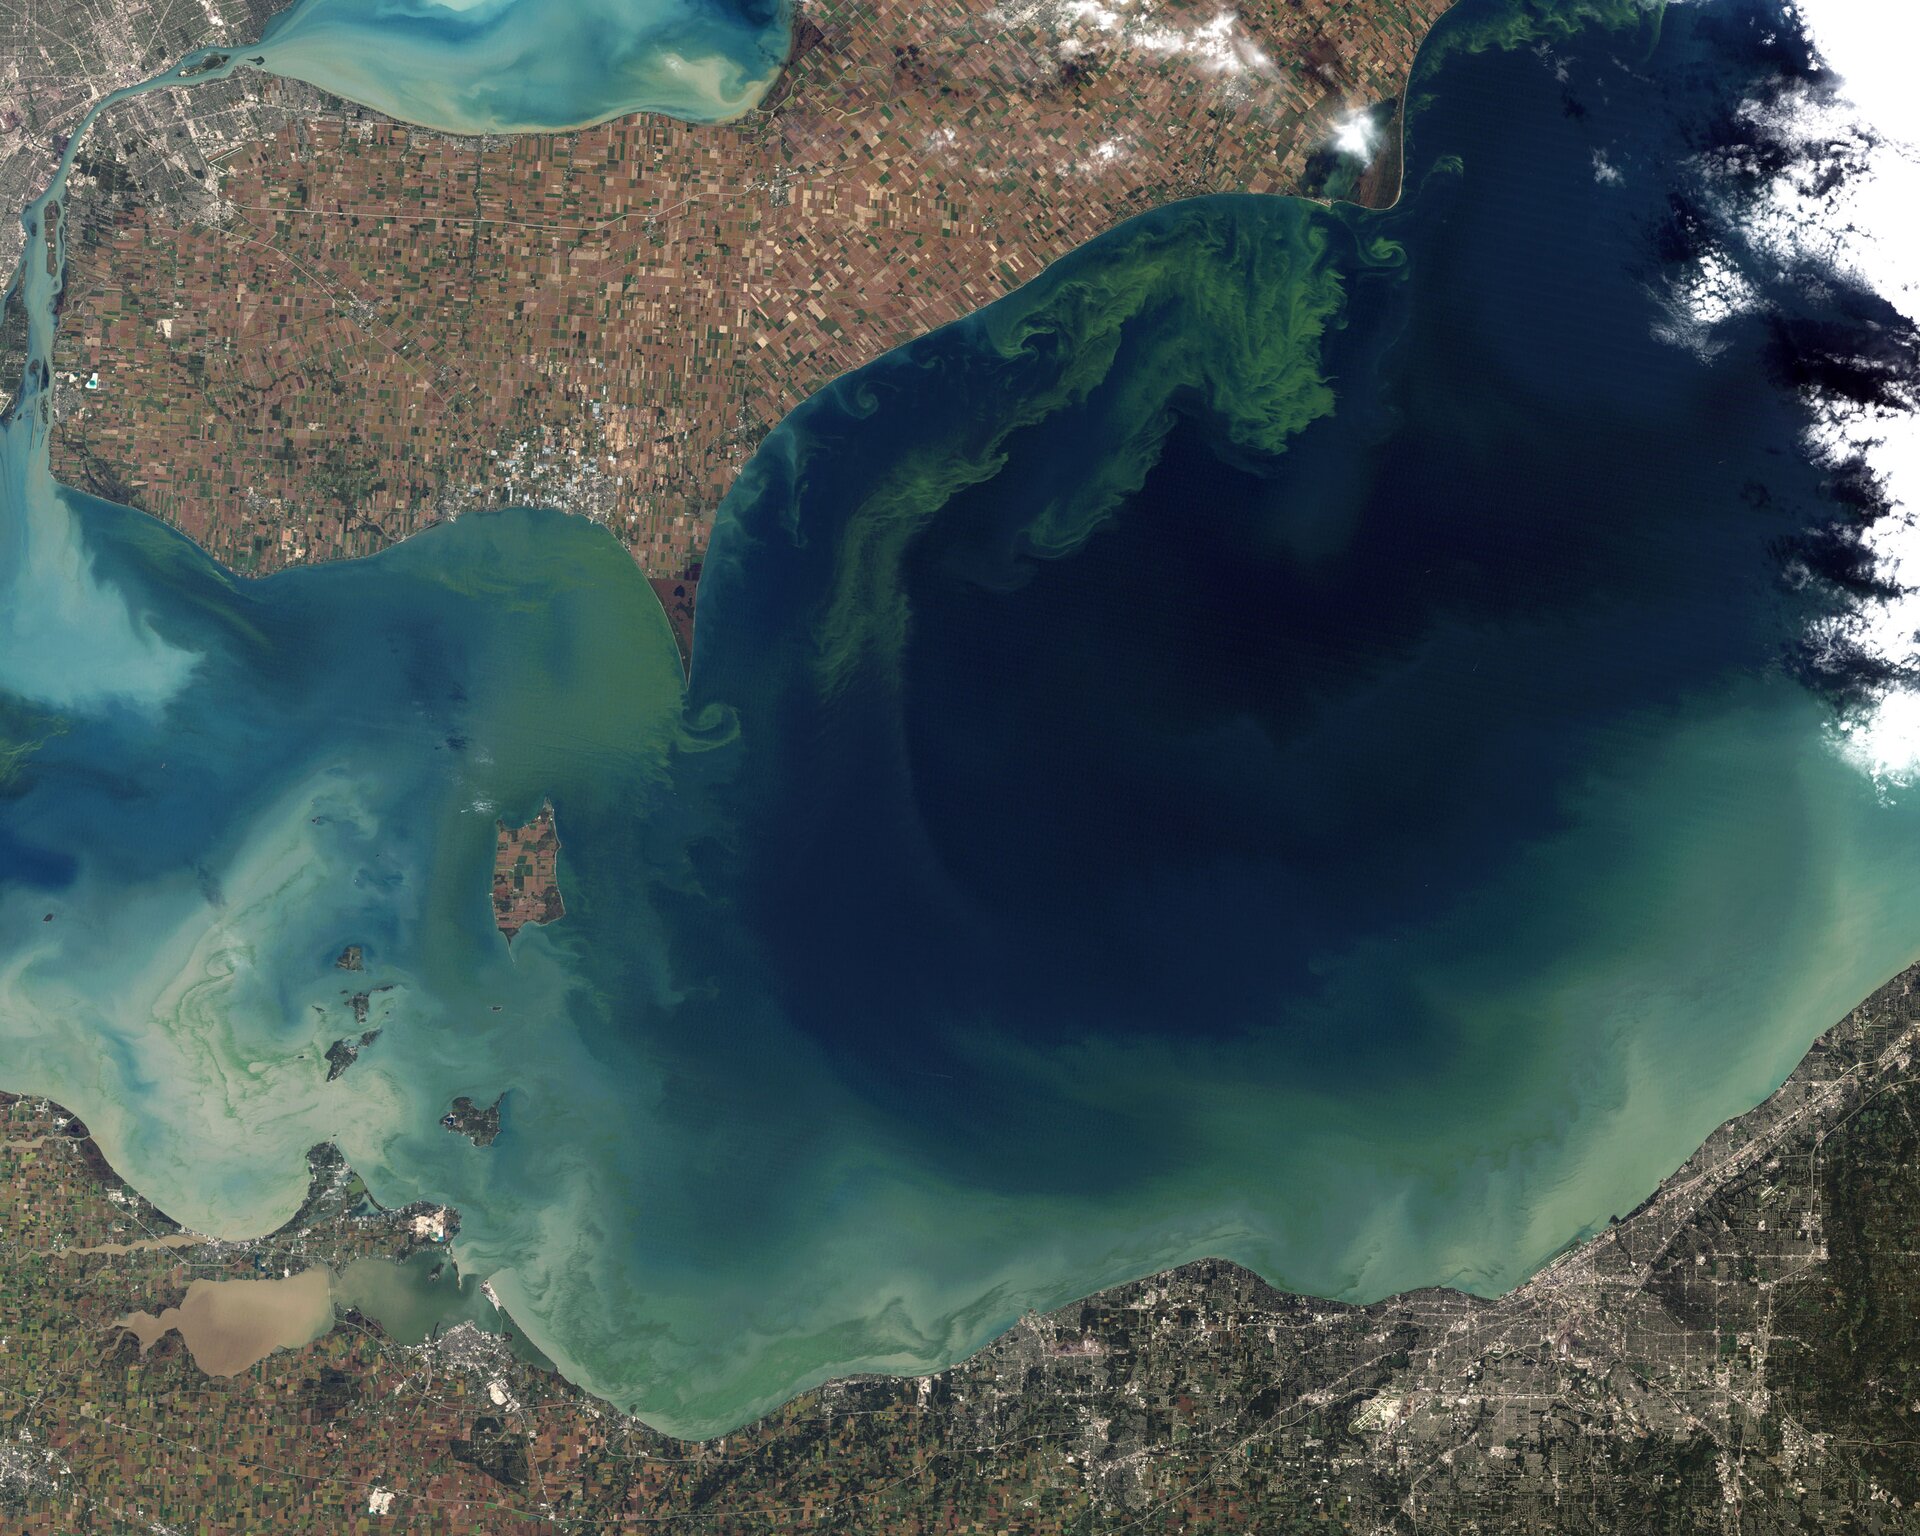 Zdjęcie satelitarne przedstawia podłużne jezioro, o błękitnej wodzie. Na jego powierzchni można zauważyć zielony zakwit pokrywający większość jego powierzchni. 